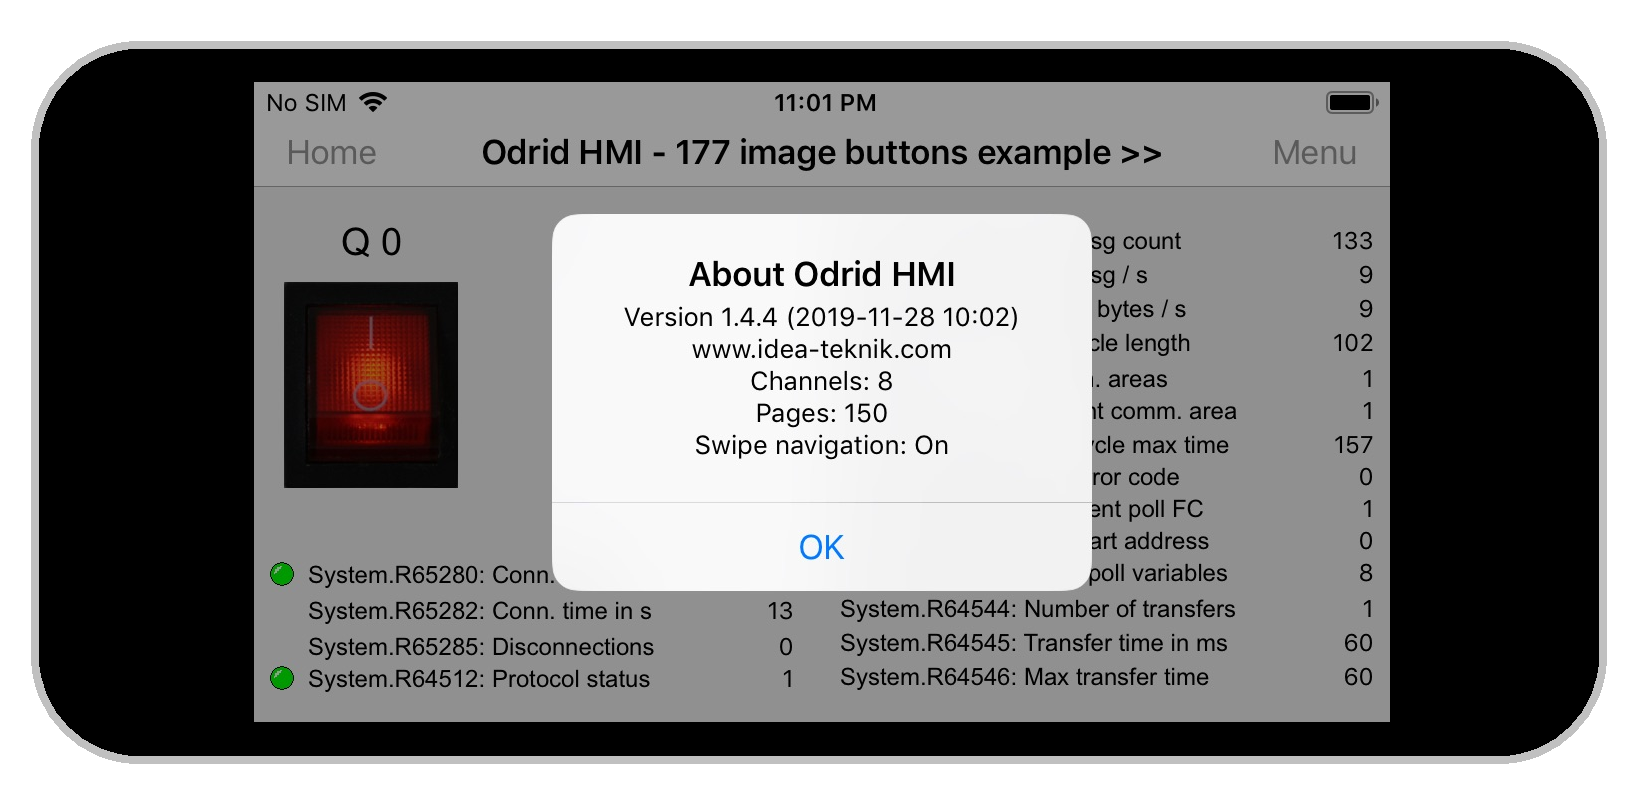 Odrid HMI 1.4.4 on an Iphone 5s